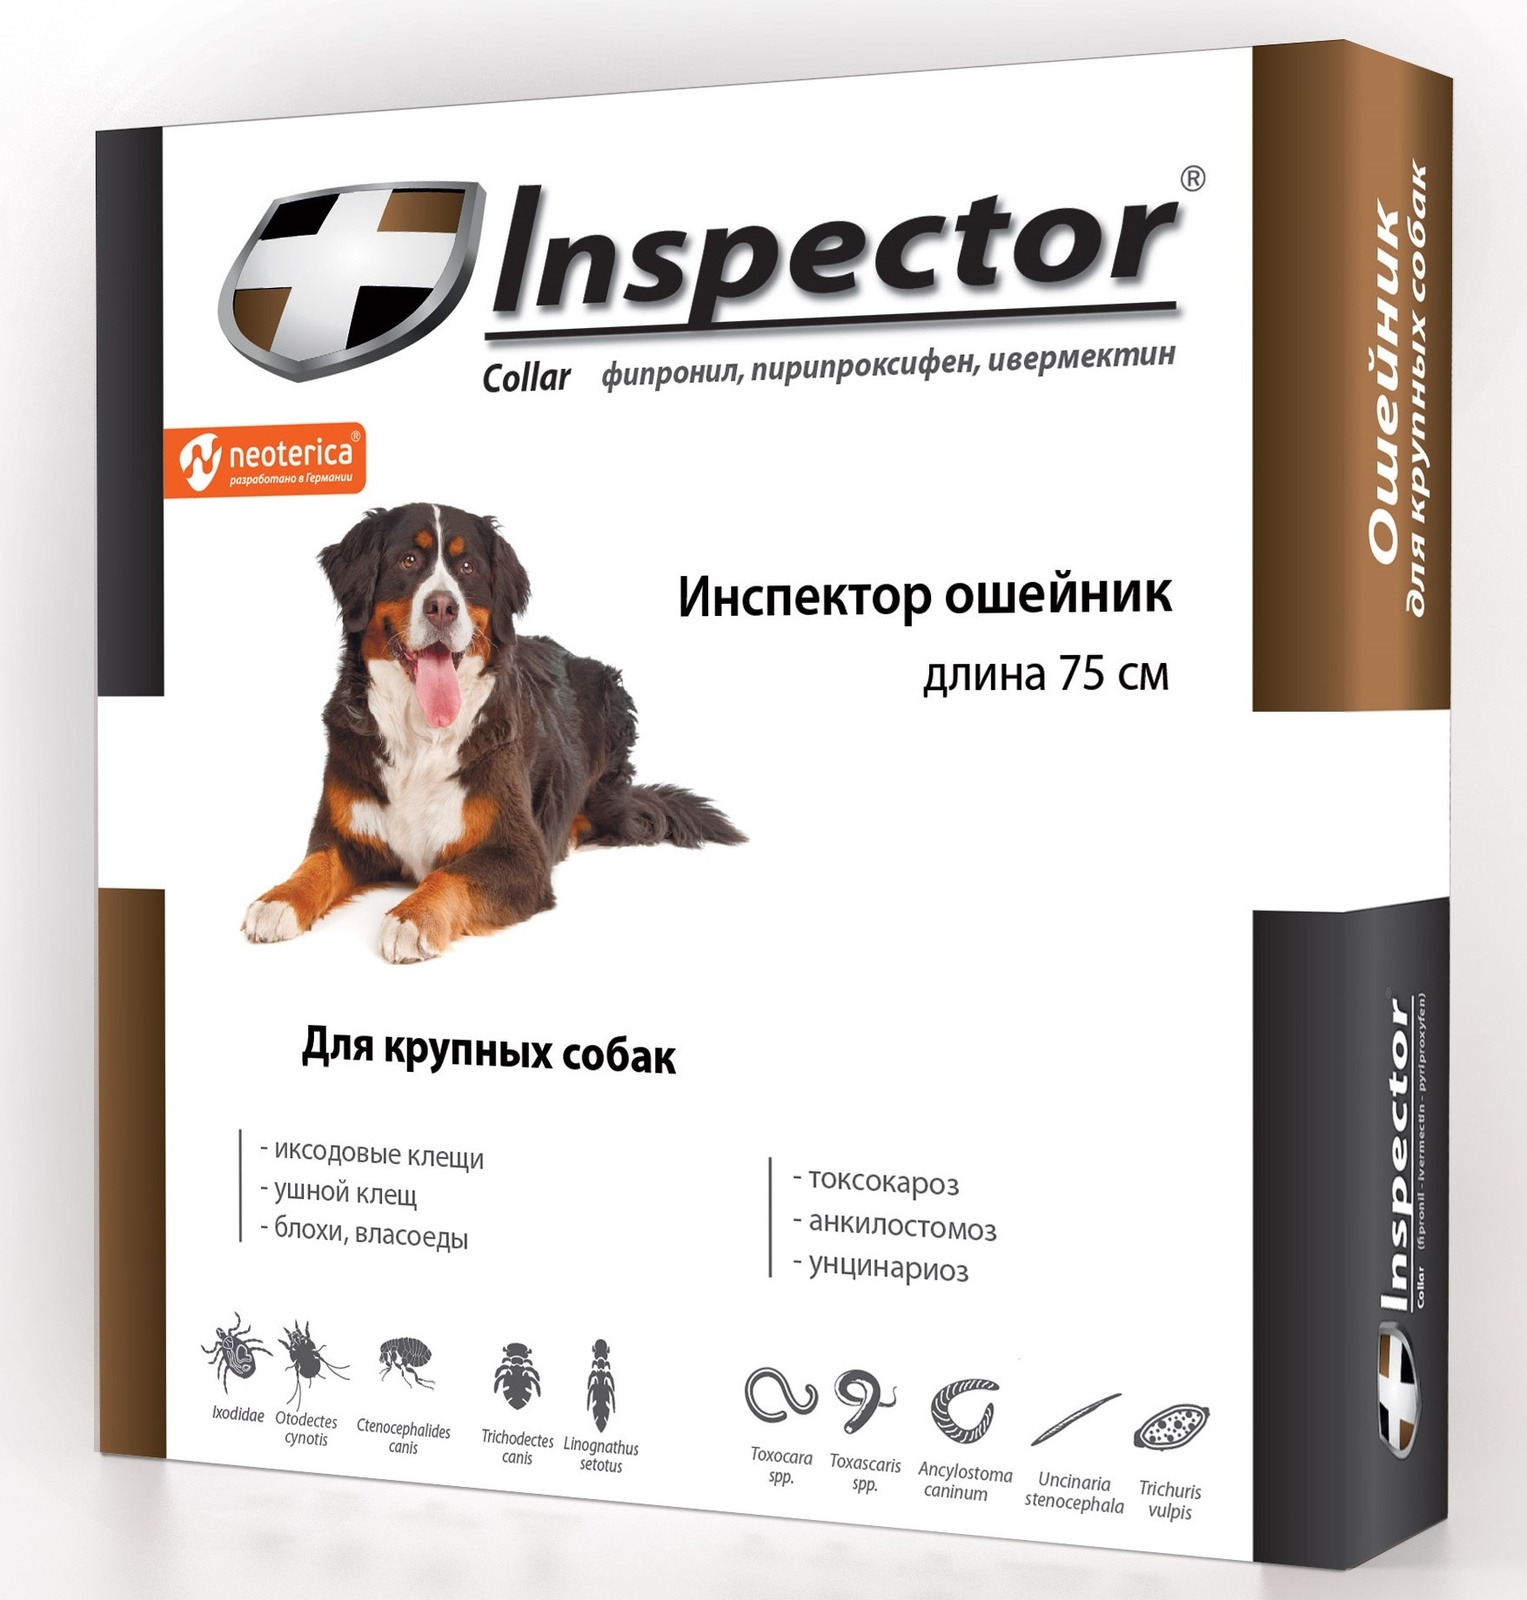 Inspector Inspector ошейник от клещей, насекомых, глистов для крупных собак, 75 см (80 г) ошейник rolfclub инвермектин для собак 65 см